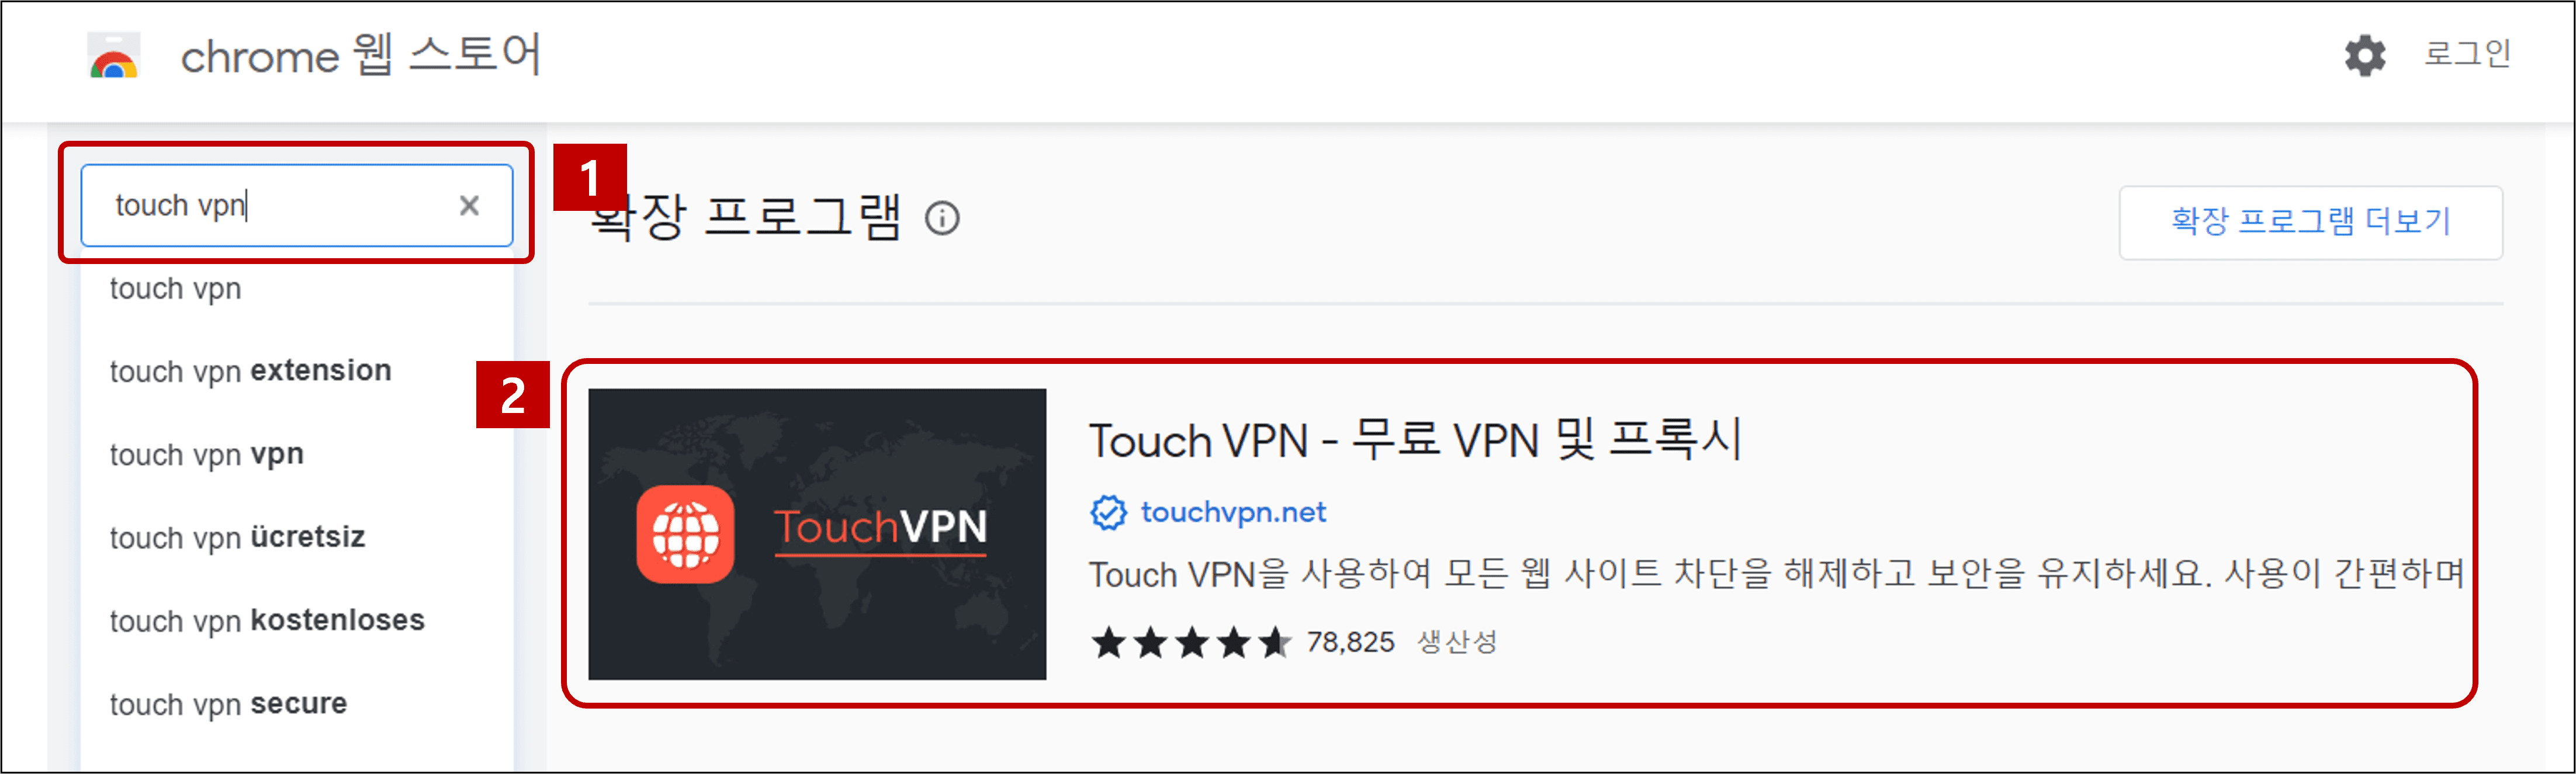 TOUCH-VPN-검색